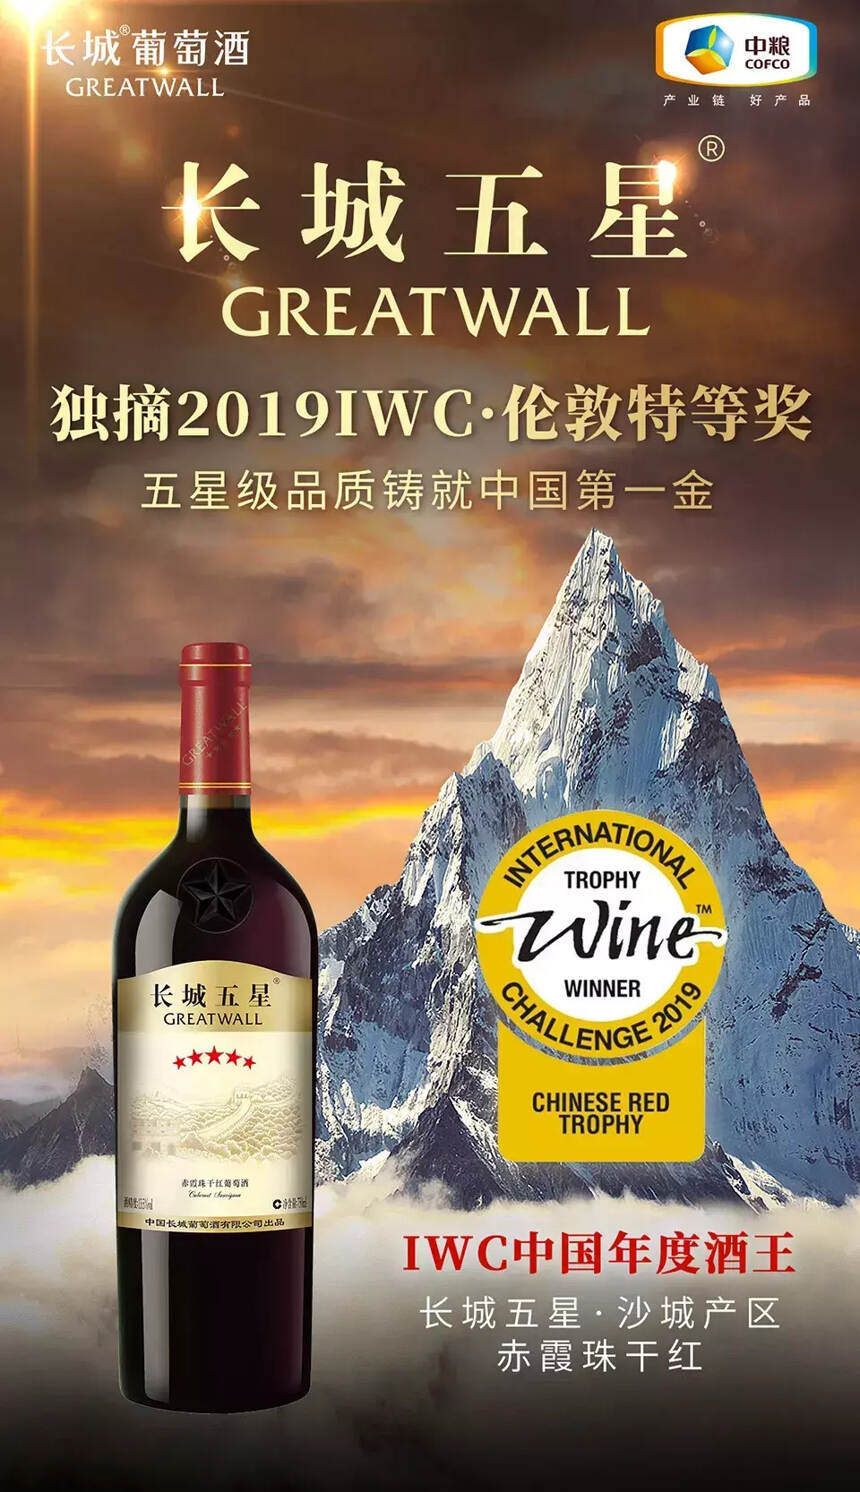 长城五星成唯一斩获三大国际赛事金奖的中国葡萄酒品牌